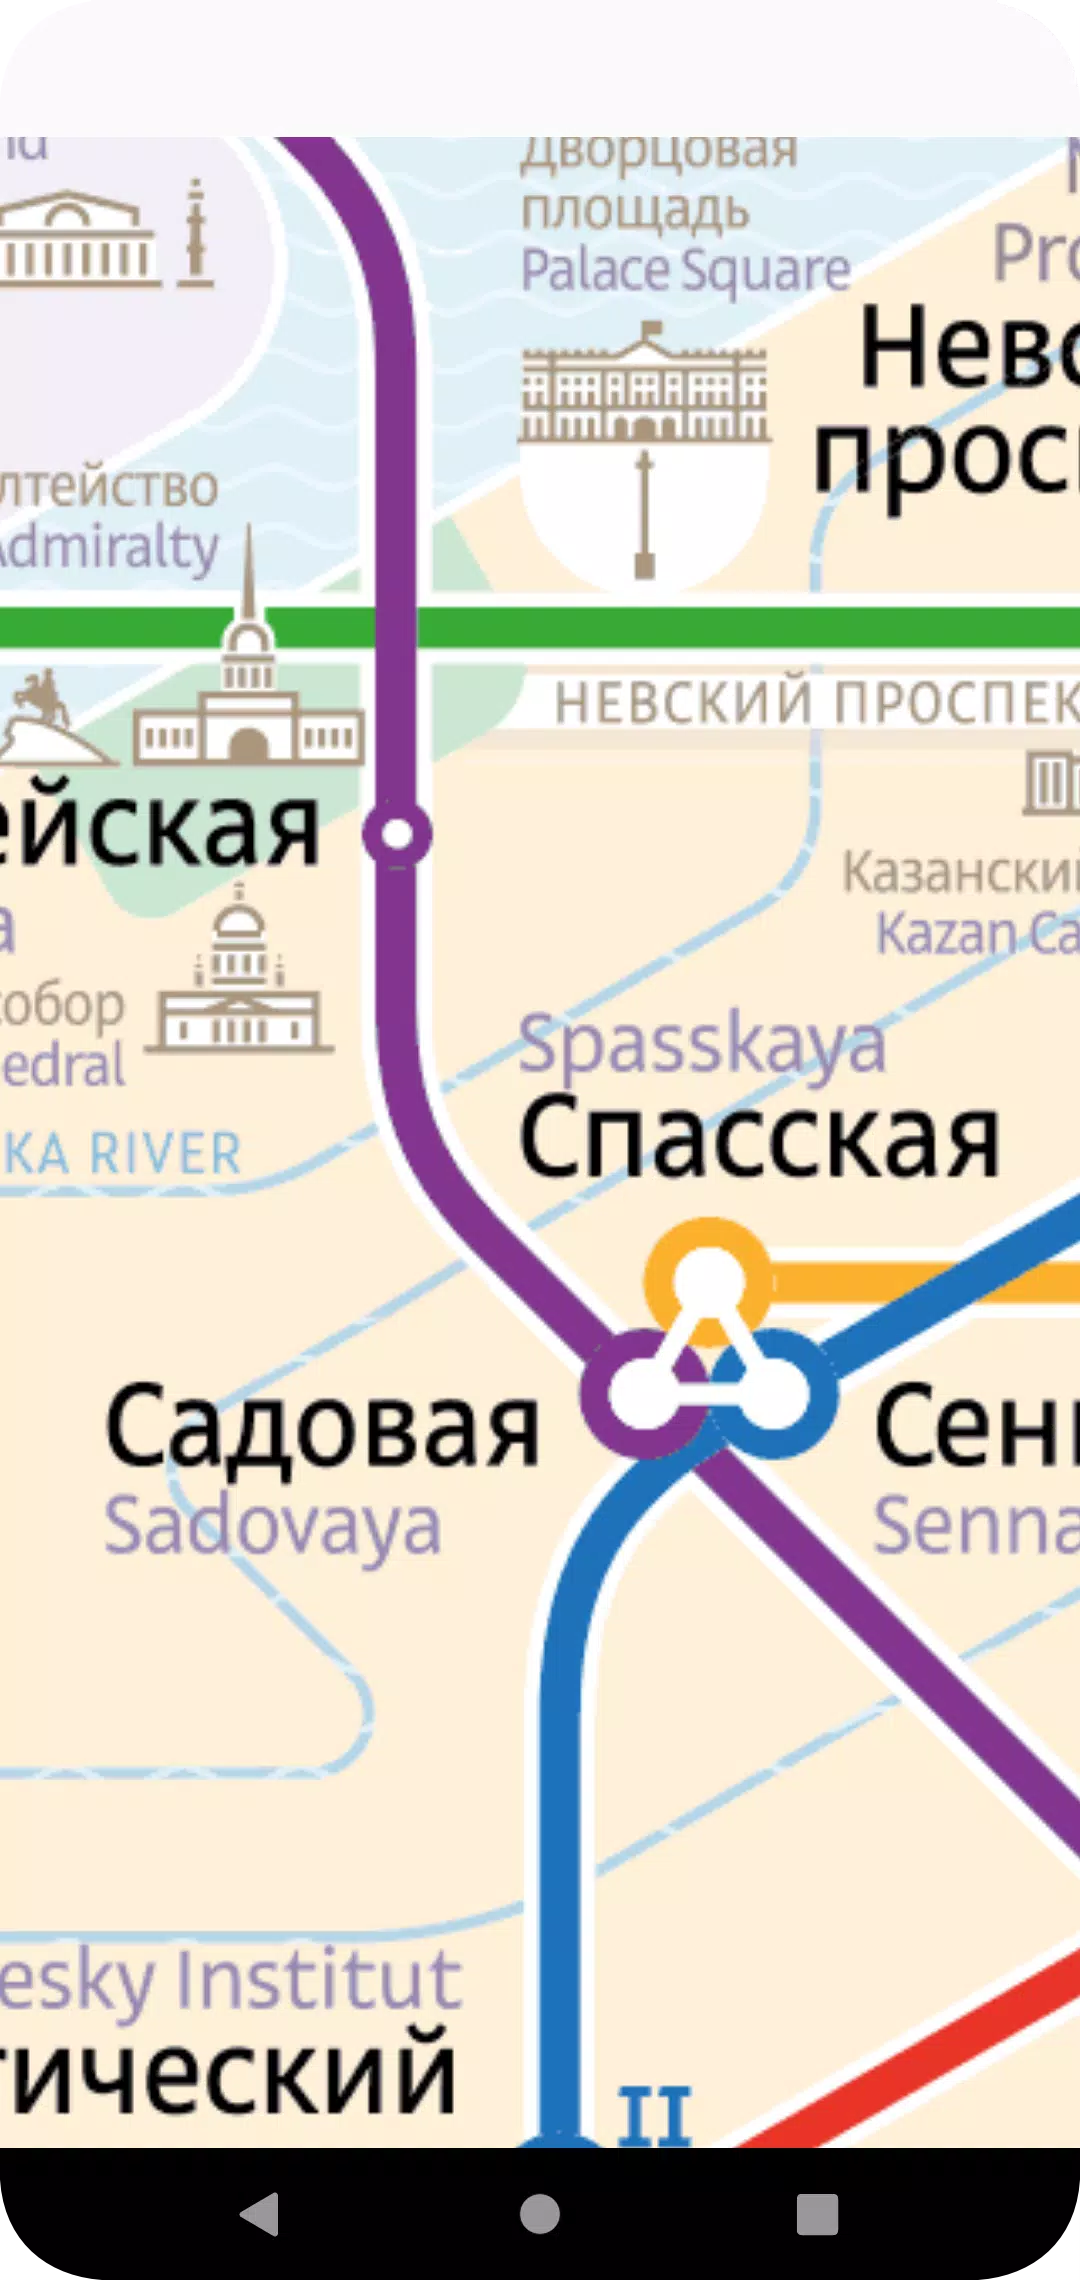 Subway Surfers Saint Petersburg  Jogos online, São petersburgo